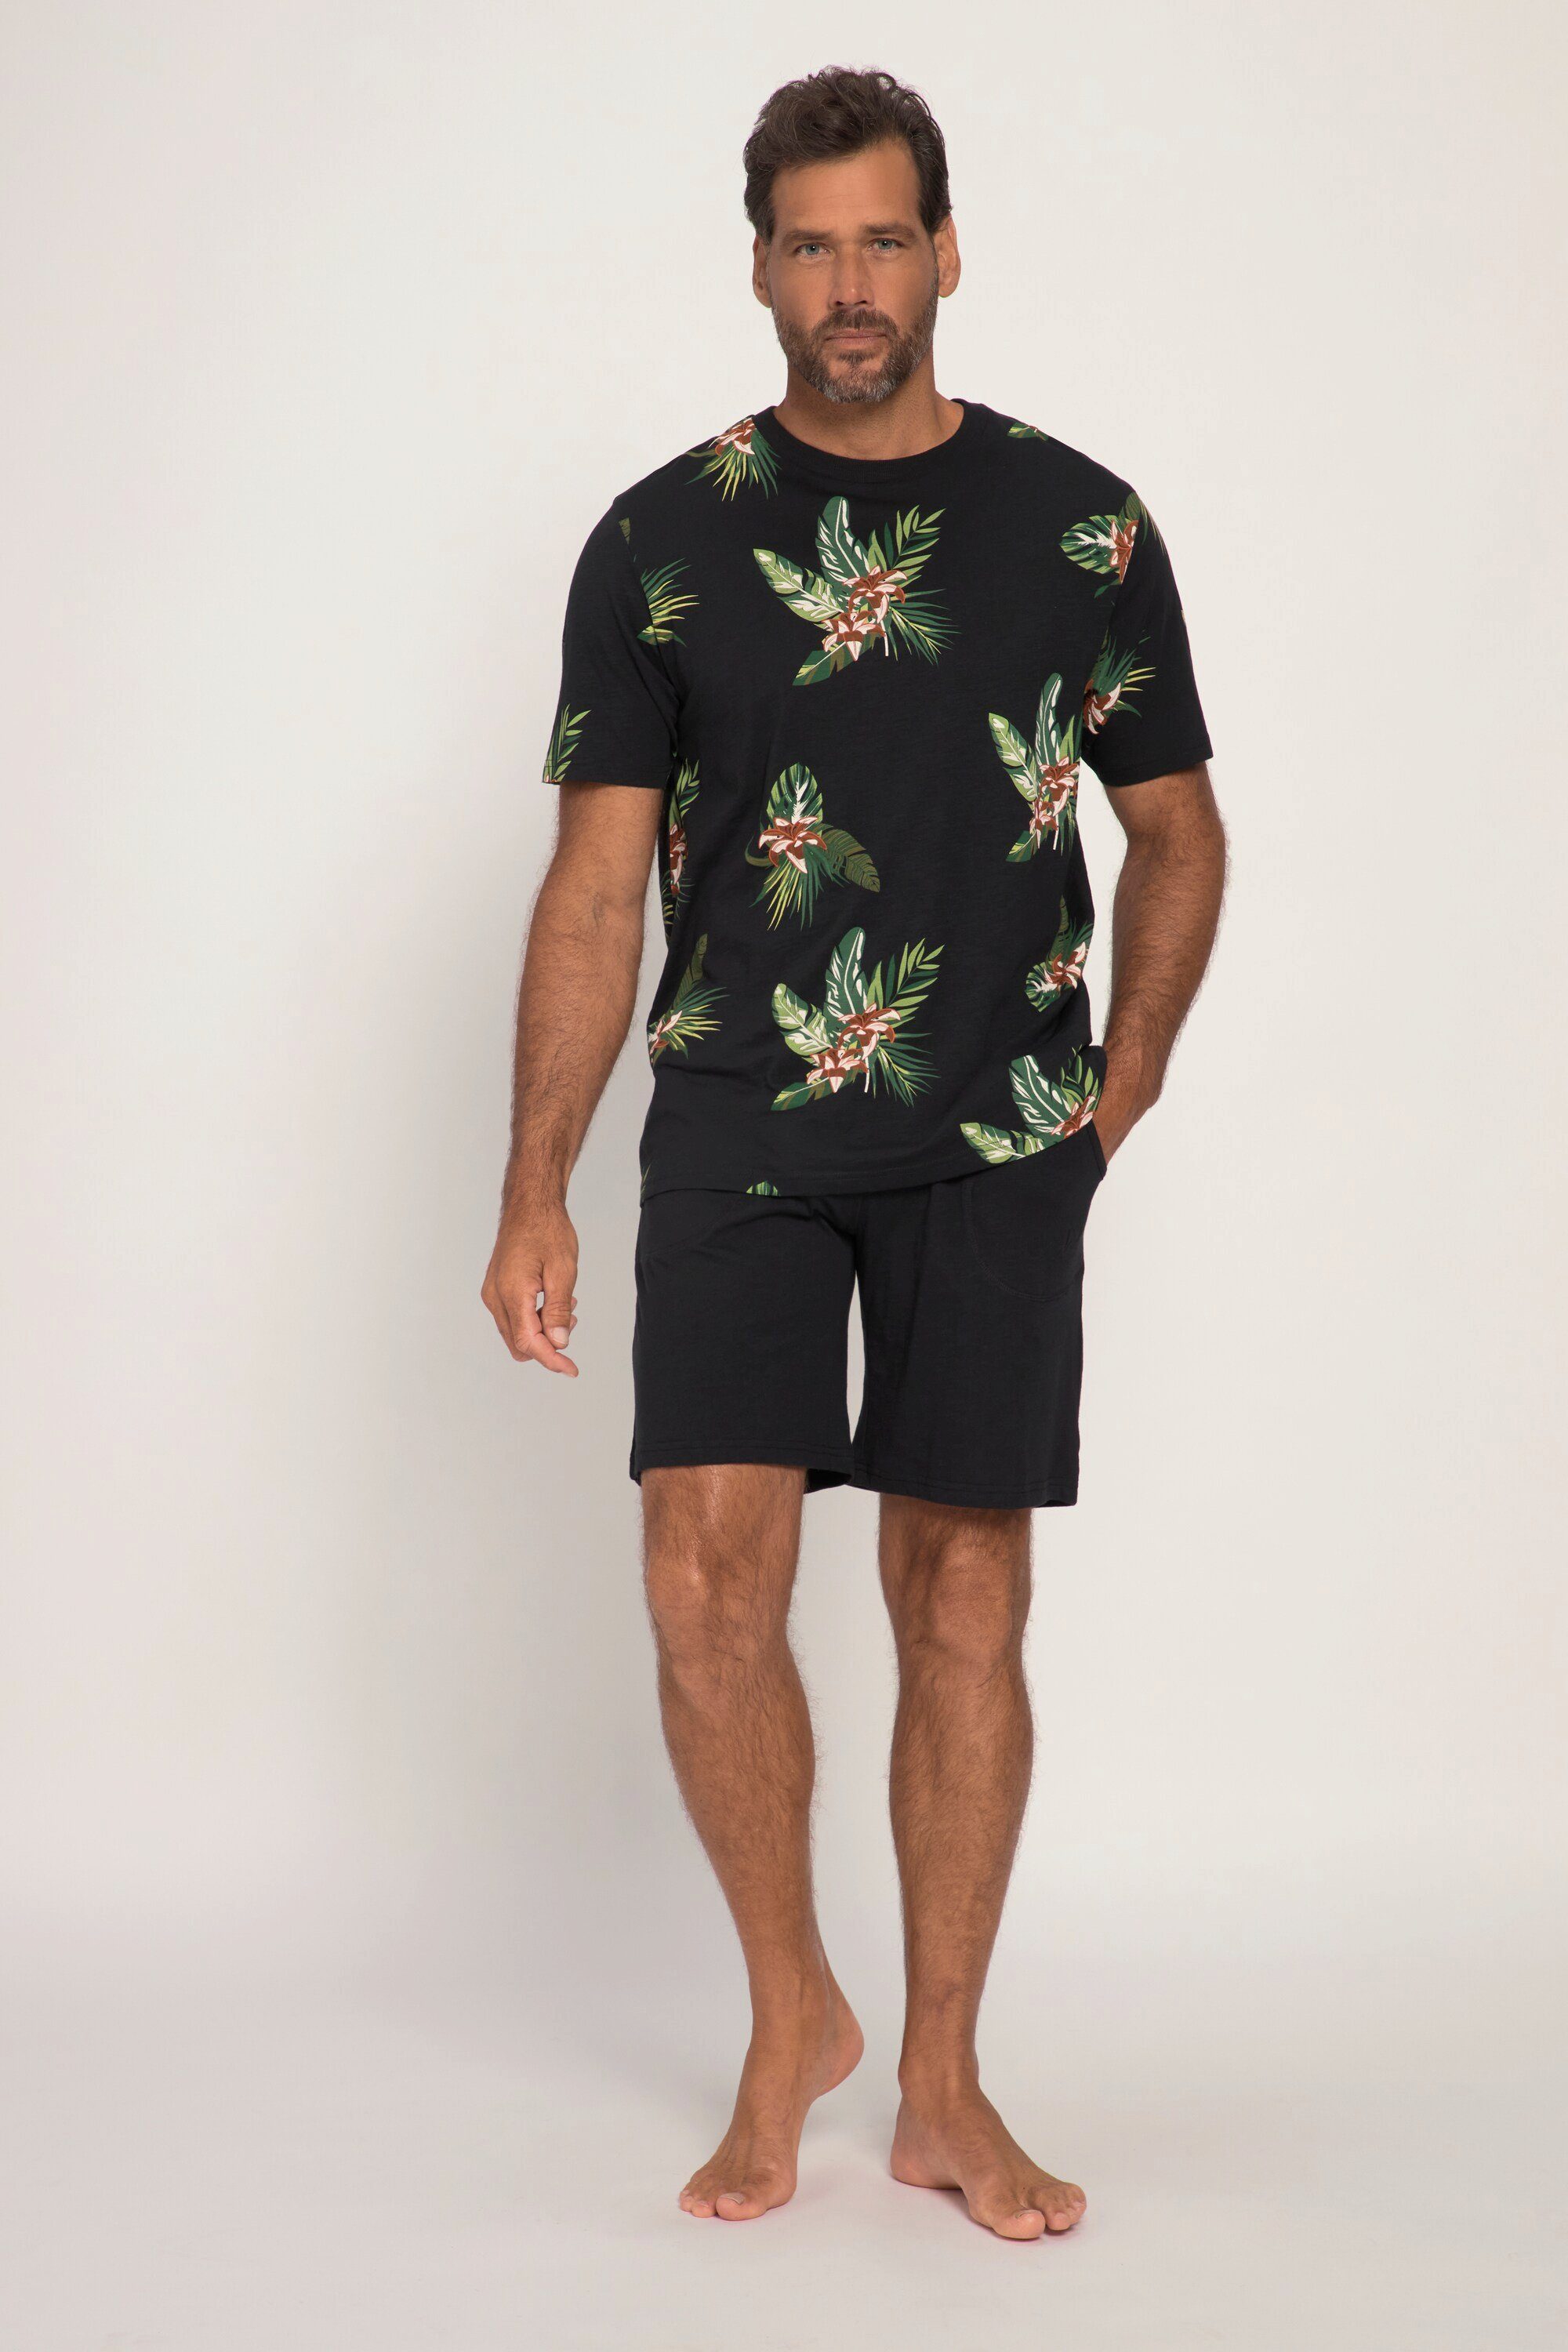 JP1880 Schlafanzug Schlafanzug kurz Shirt mit Print Shorts bis 7 XL